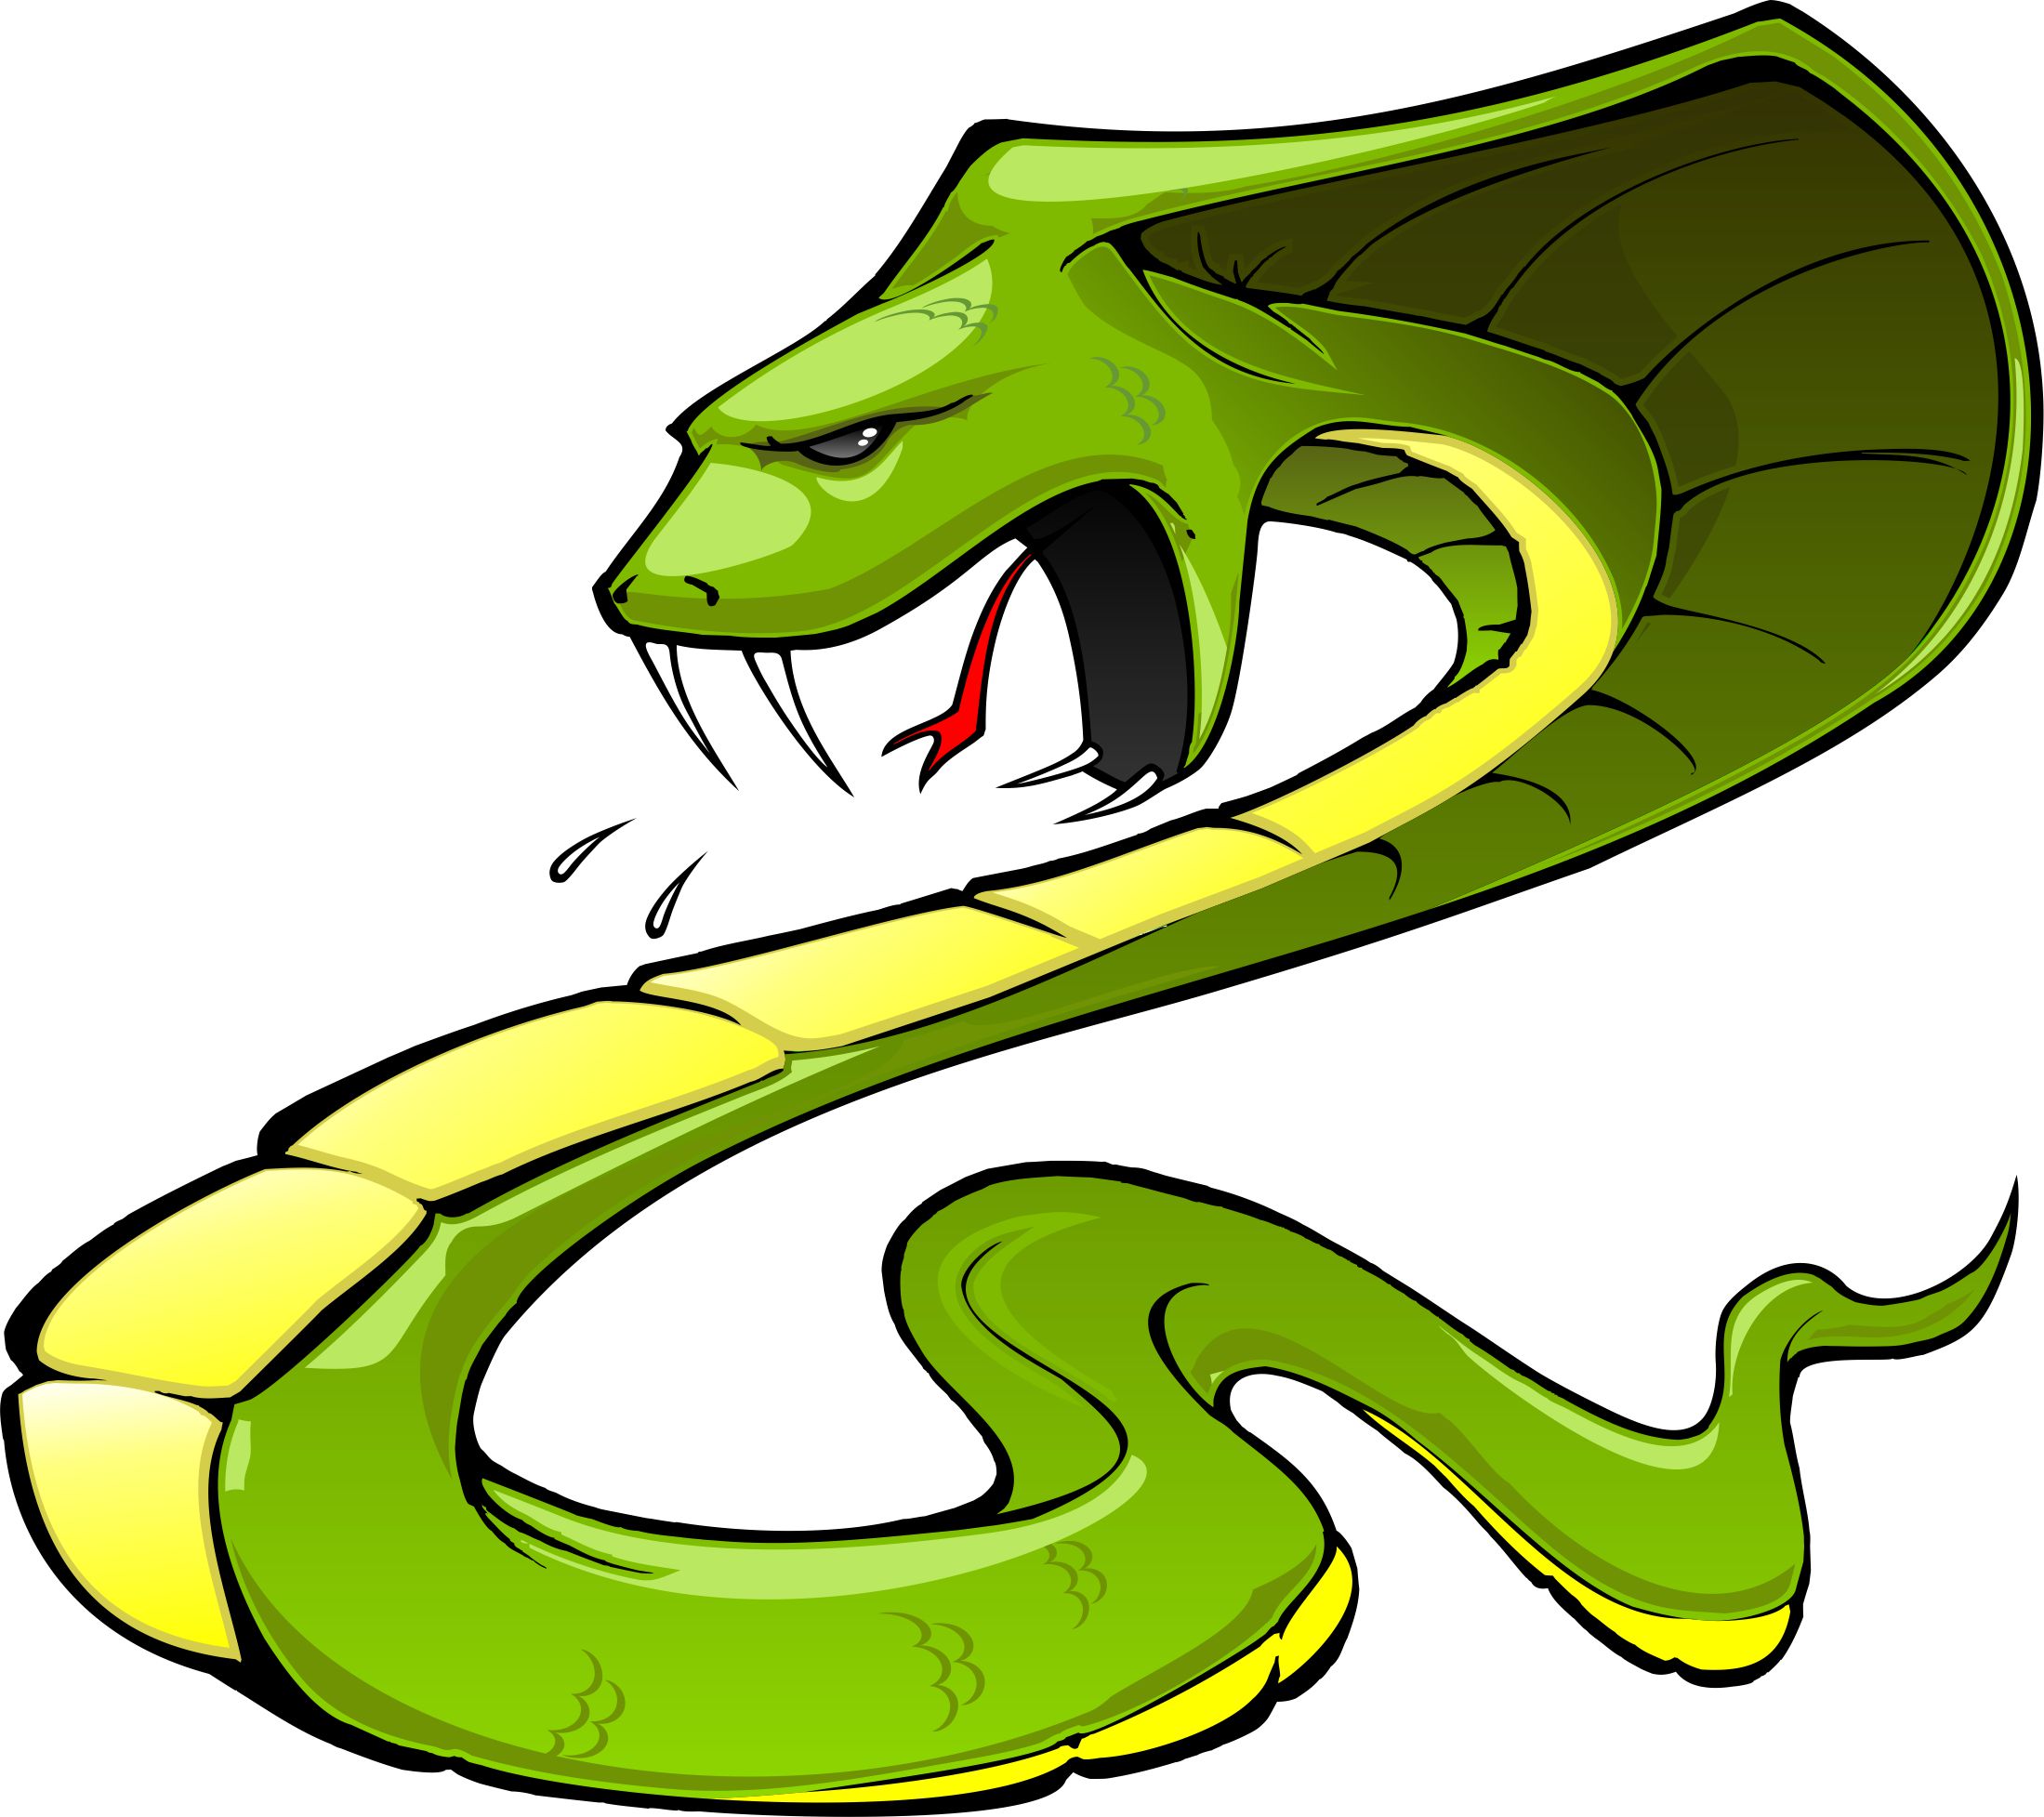 ... Cobra Viper Snake - Illus